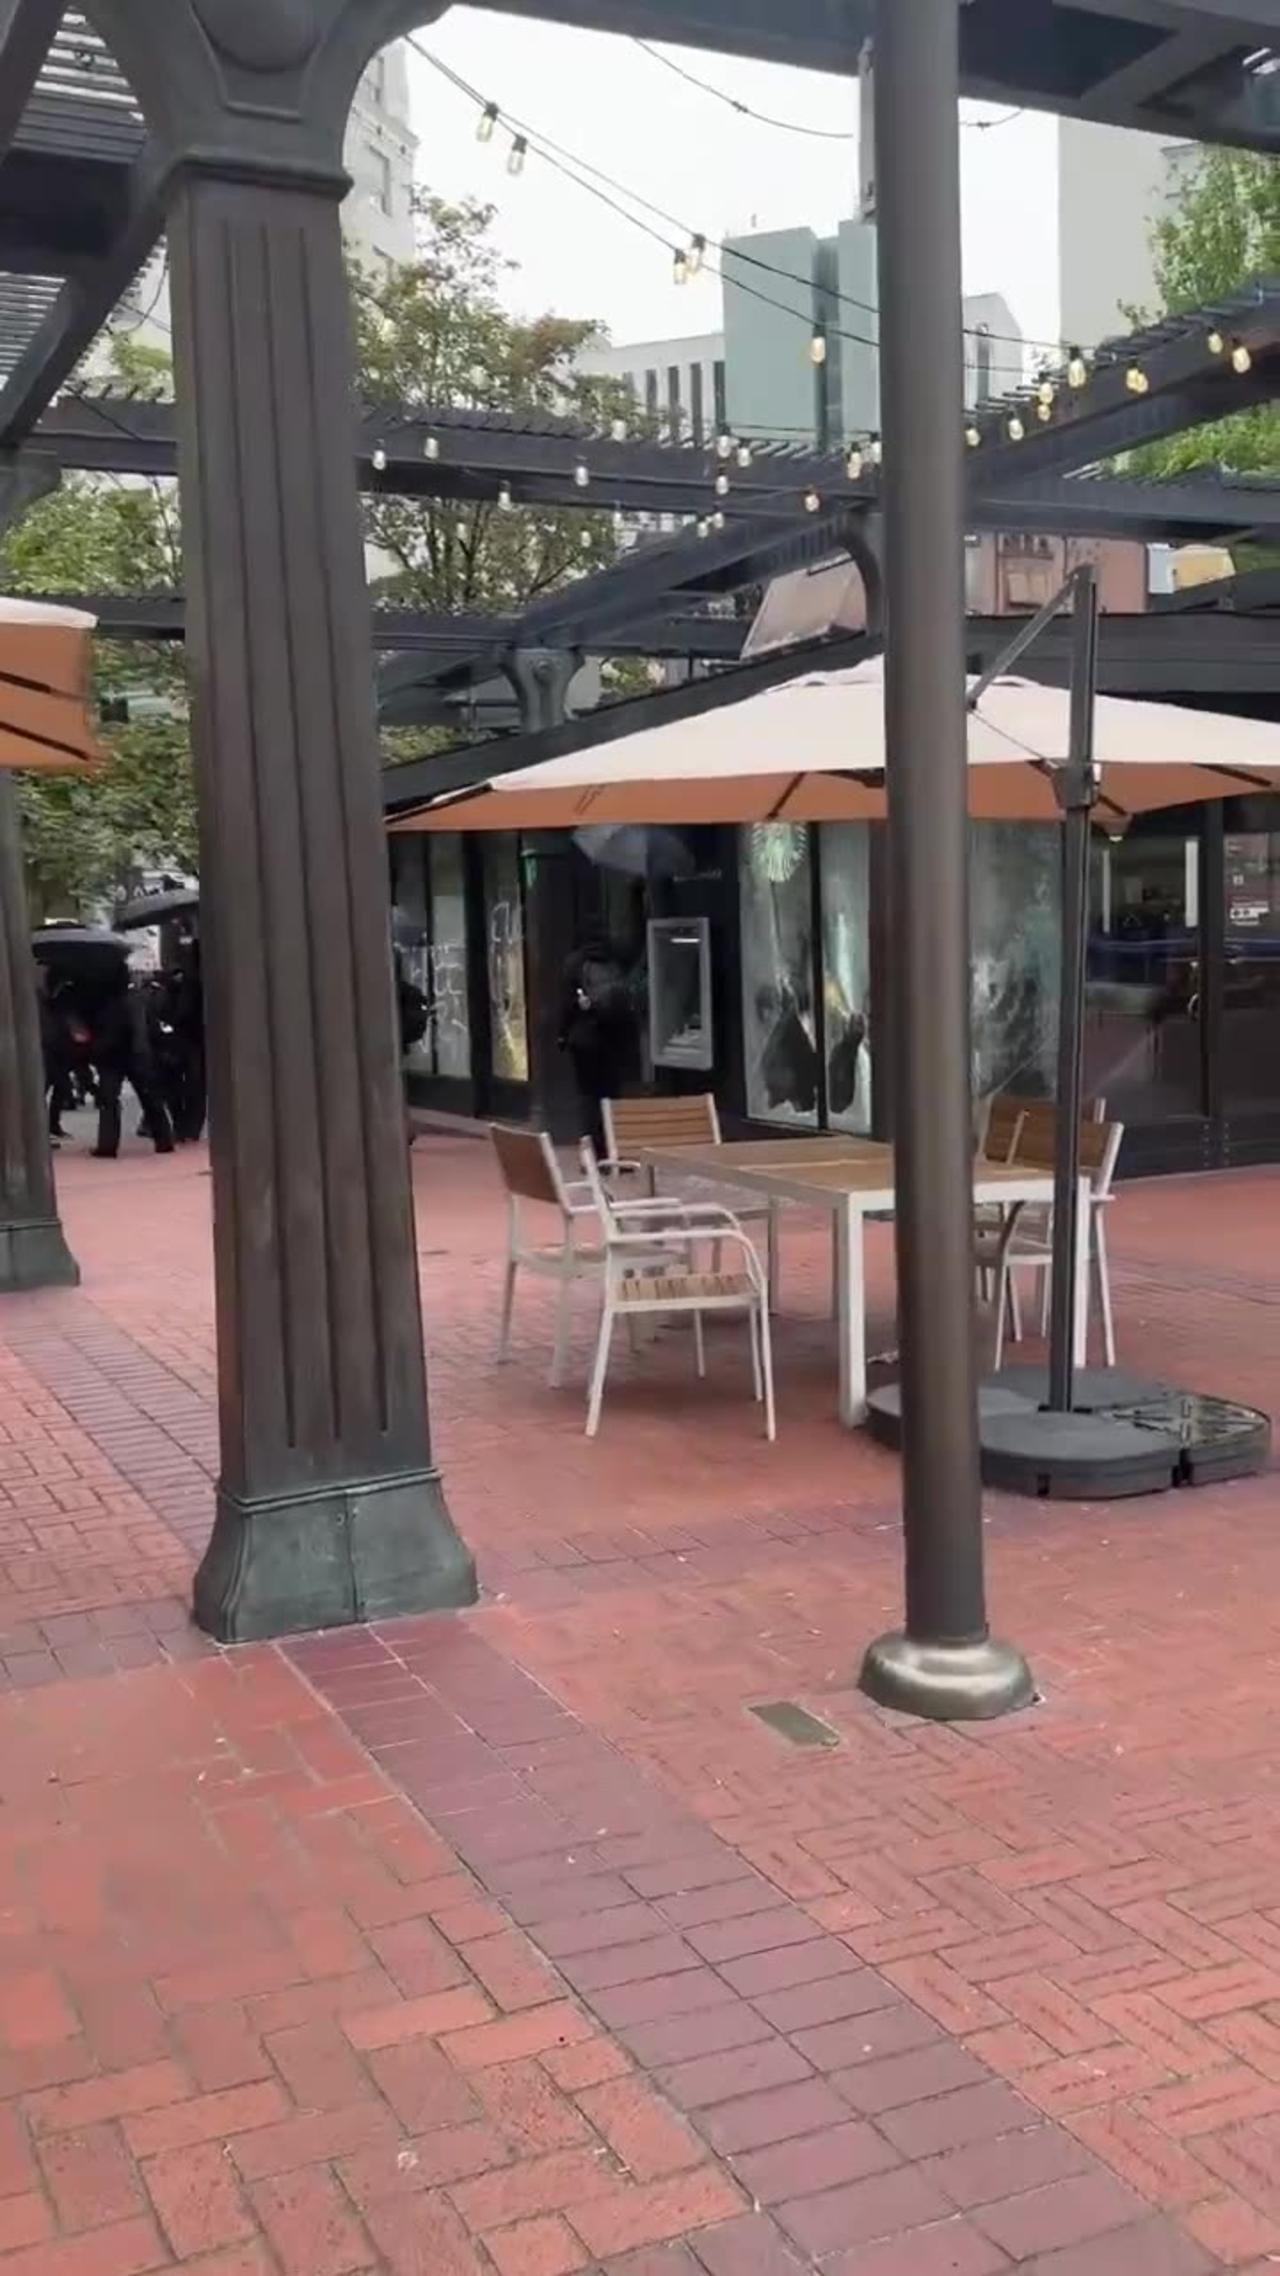 Portland - Antifa destroying a Starbucks